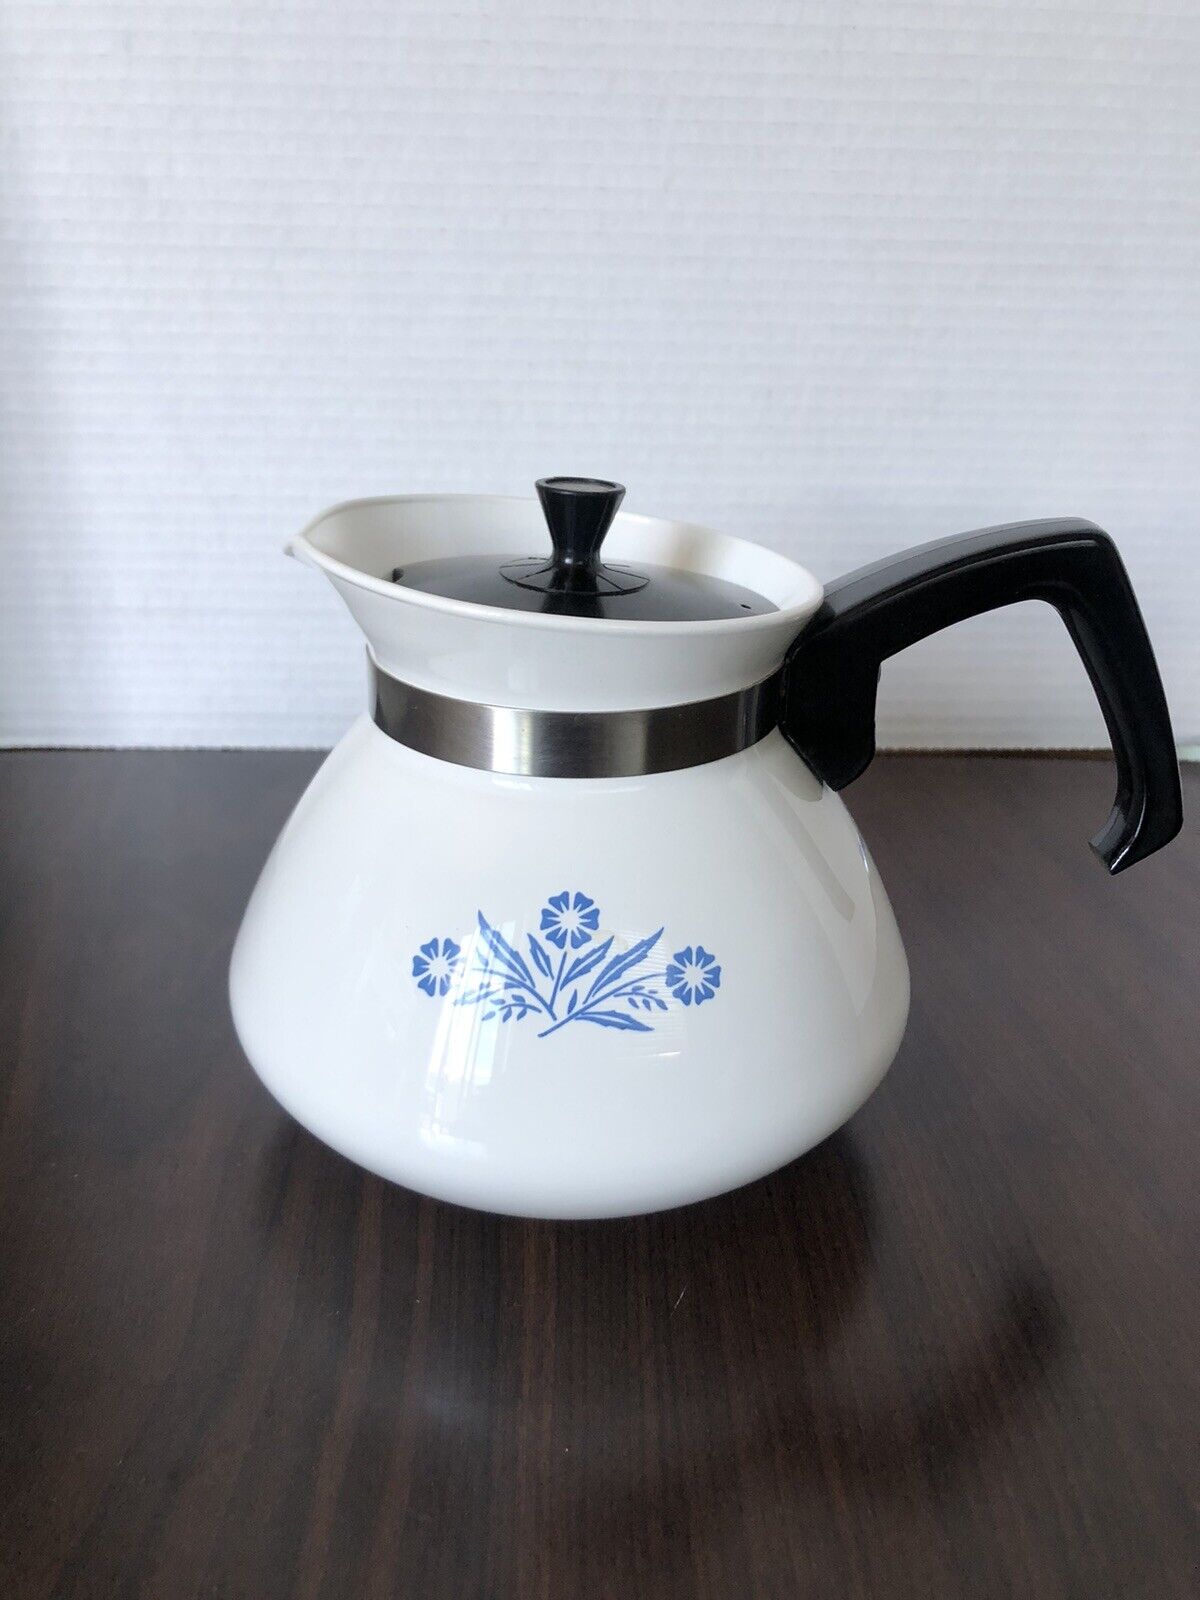 Corningware blue cornflower stove top teapot P-104 vintage 6 cup